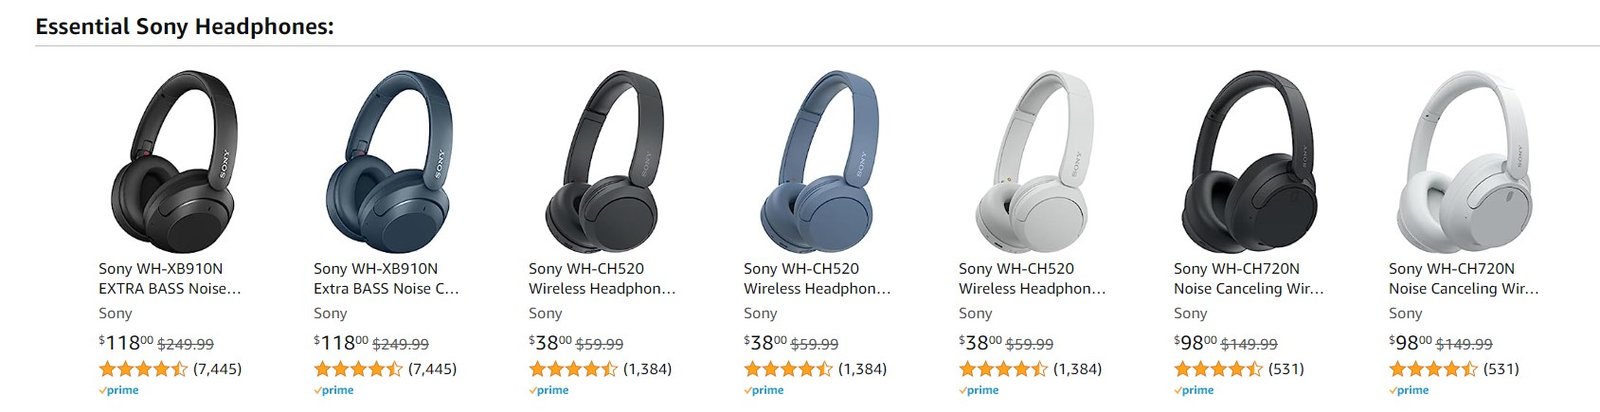 sony headphones deals